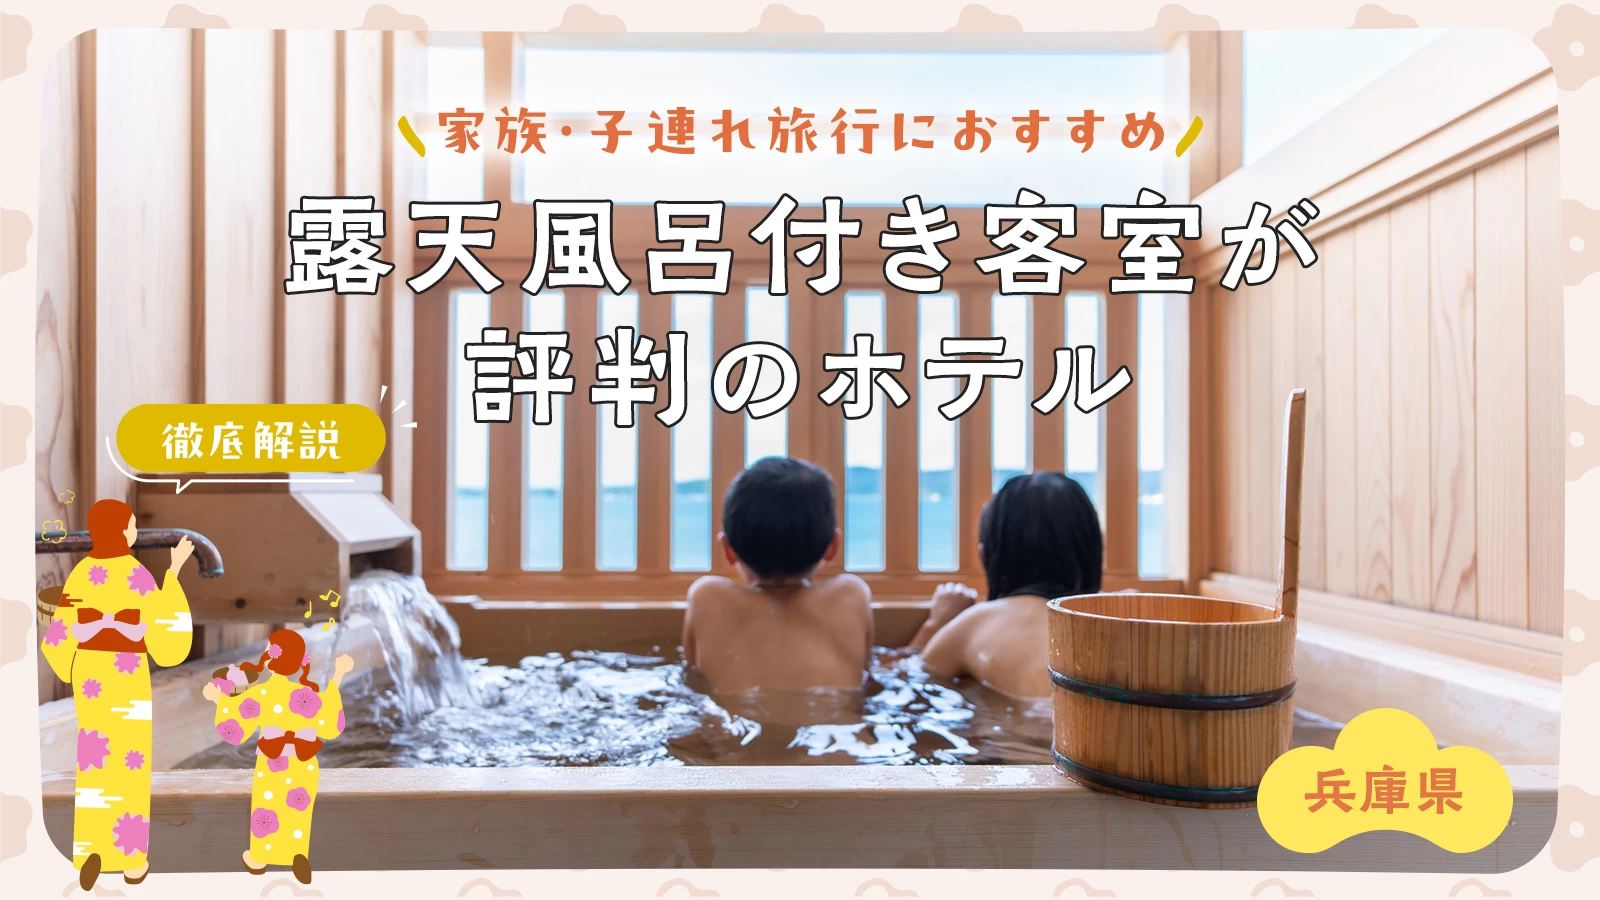 【兵庫】家族・子連れ旅行におすすめの露天風呂付き客室が評判のホテル2選を徹底解説